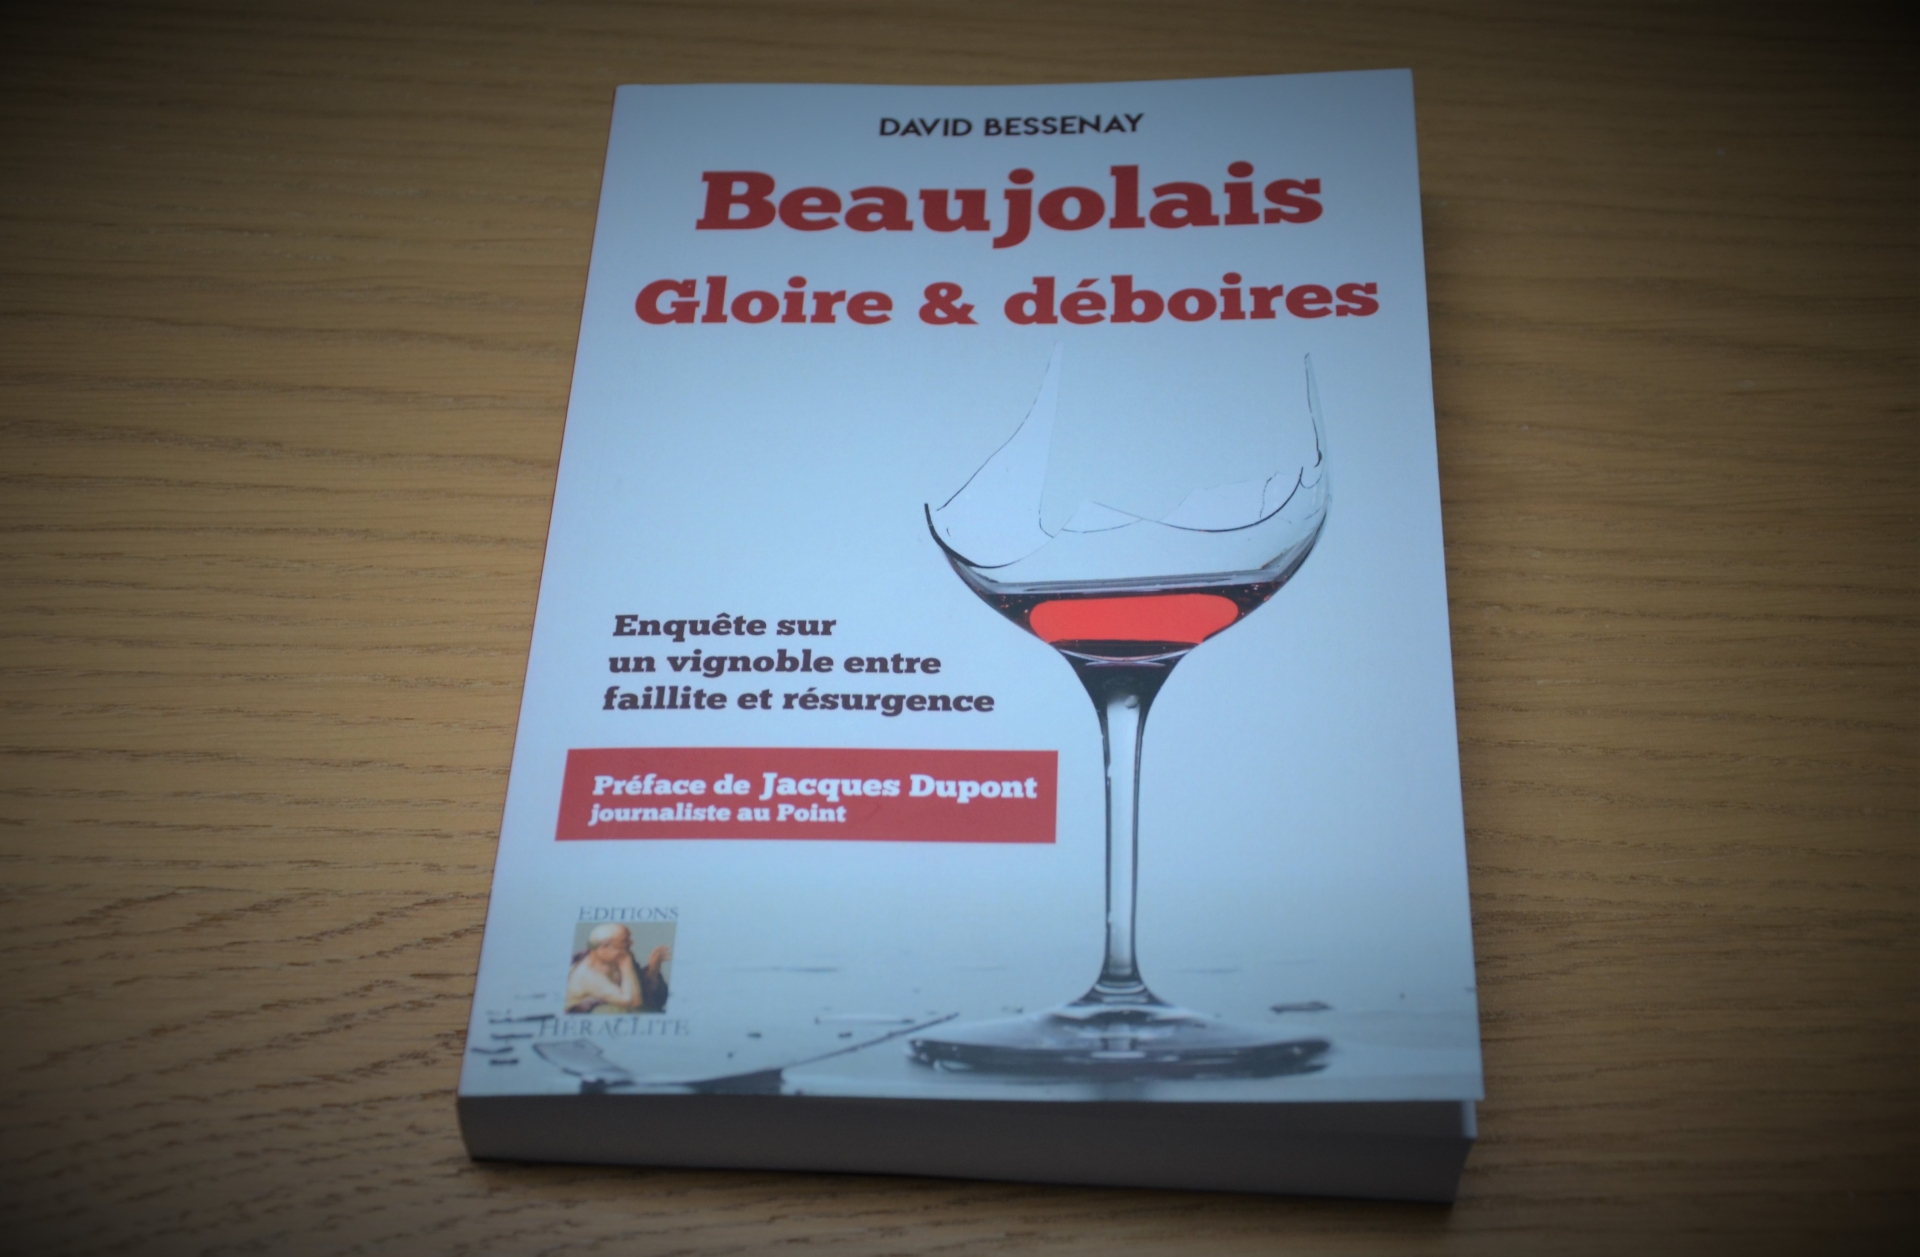 "Beaujolais, Gloire & déboires"